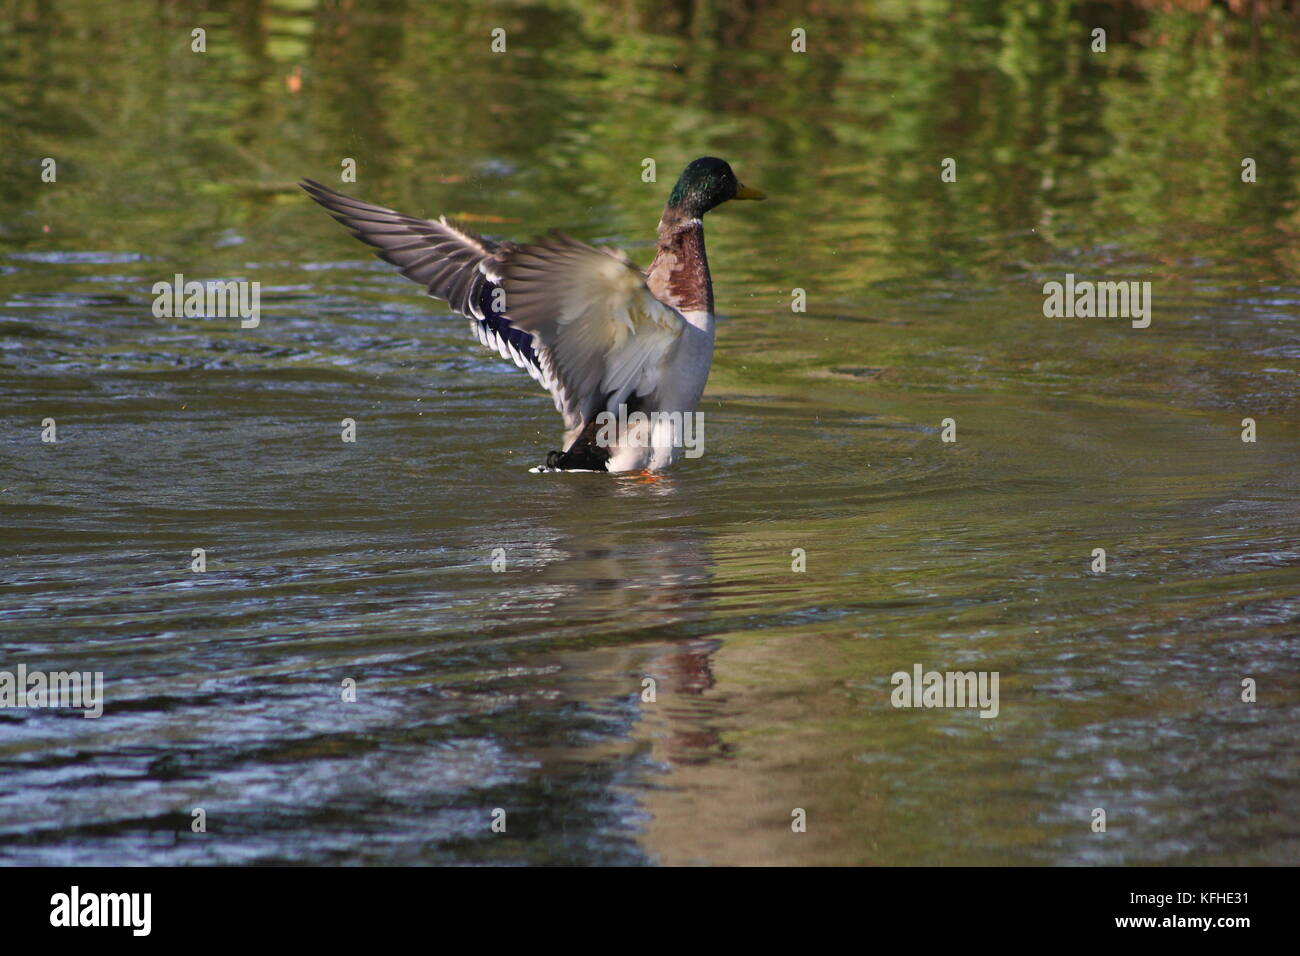 Ente beim Landeanflug auf dem Wasser mit Bauchlandung Stock Photo